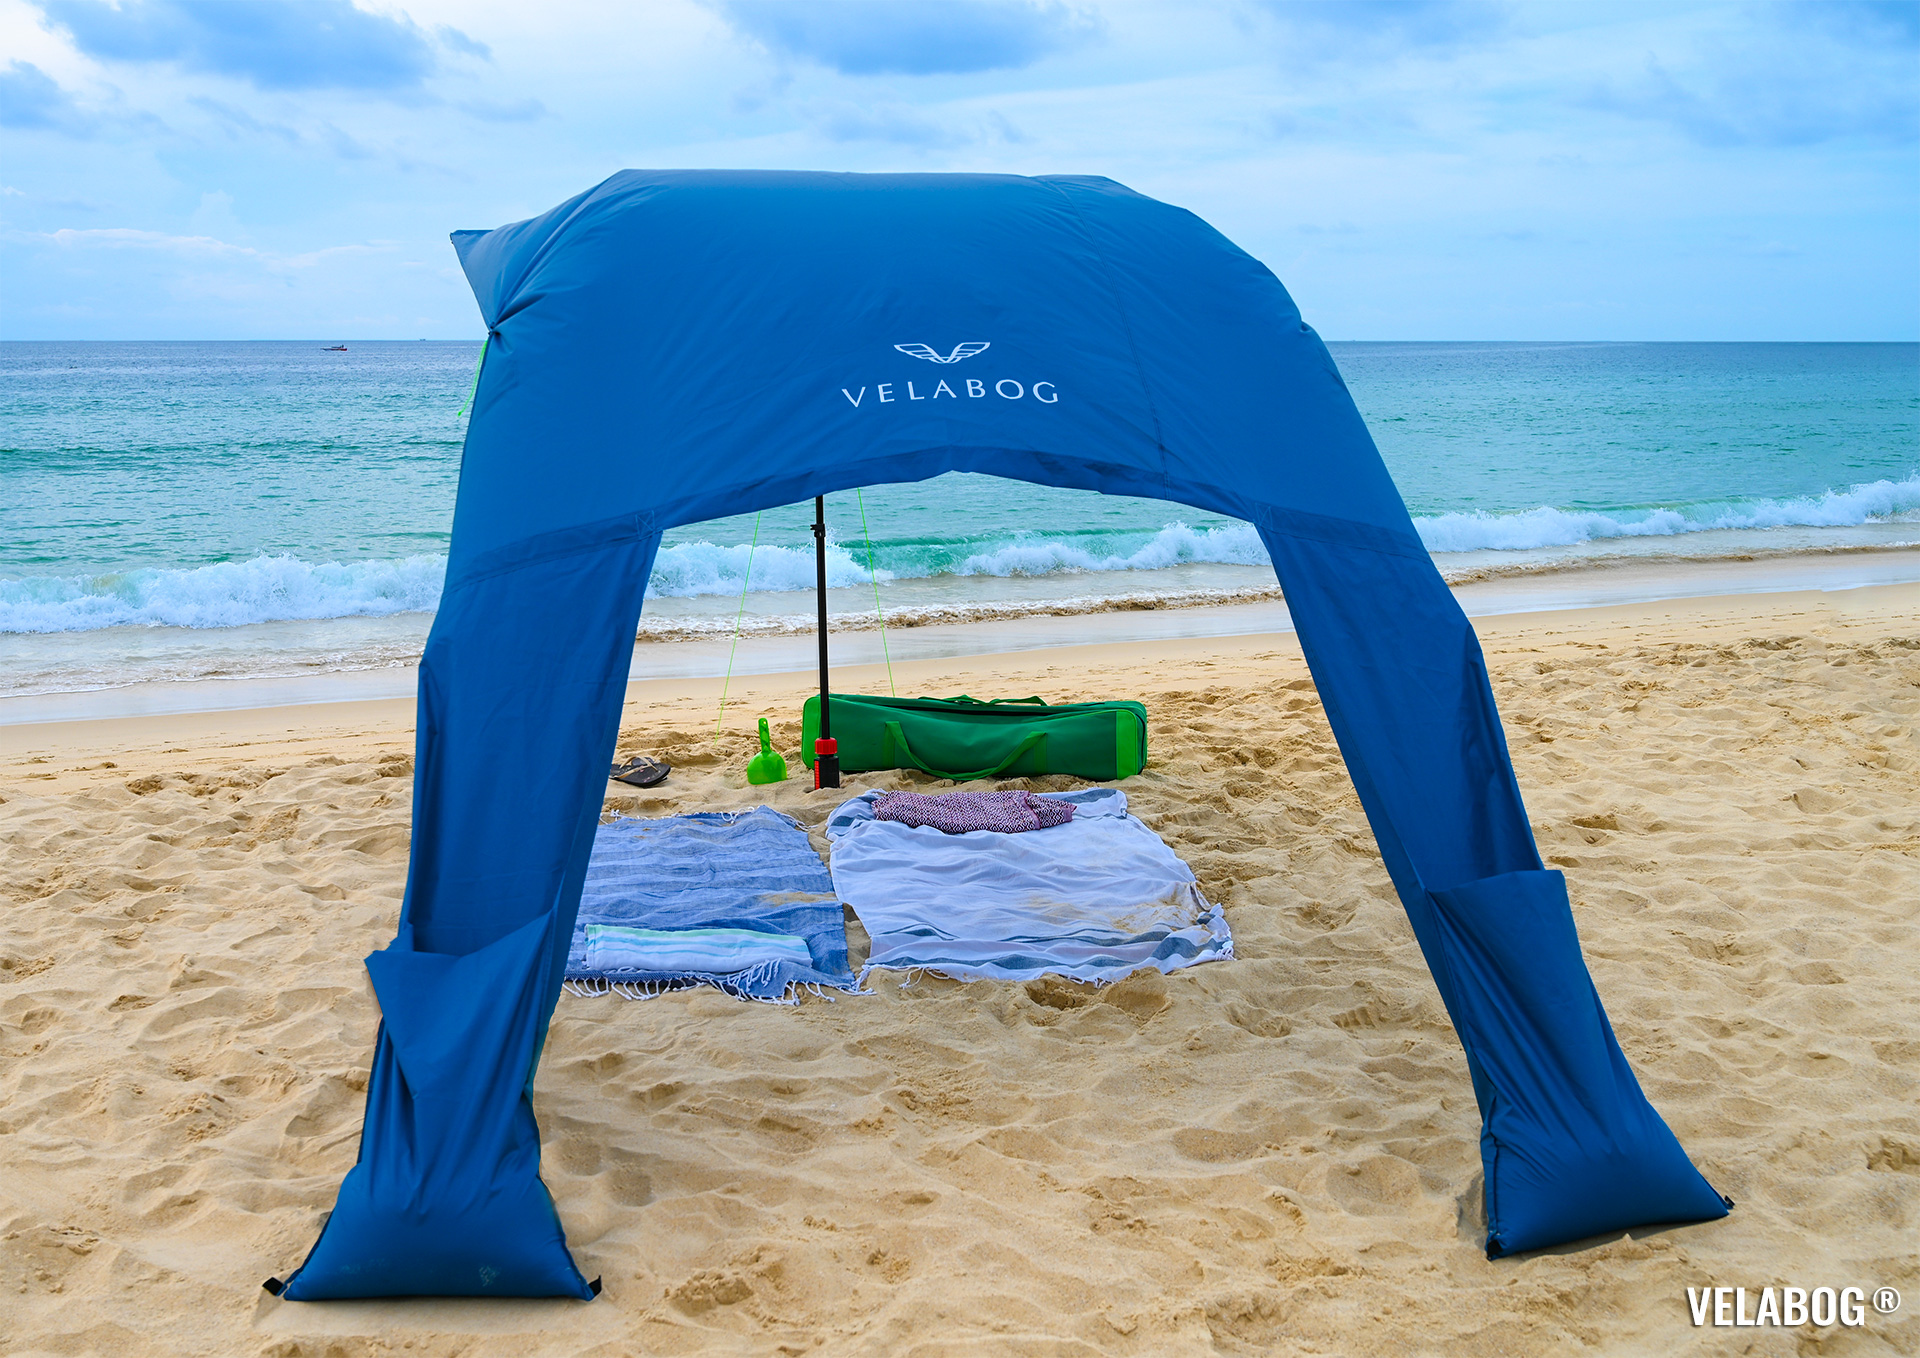 Strand Sonnensegel Strandzelt Velabog Breeze, blau. Hoch, schattig und luftig. Bester Sonnenschutz Strand. Test Strand Sonnensegel Aufbauoption beim leichten bis starken Wind. Windstabil. Ansicht von hinten.